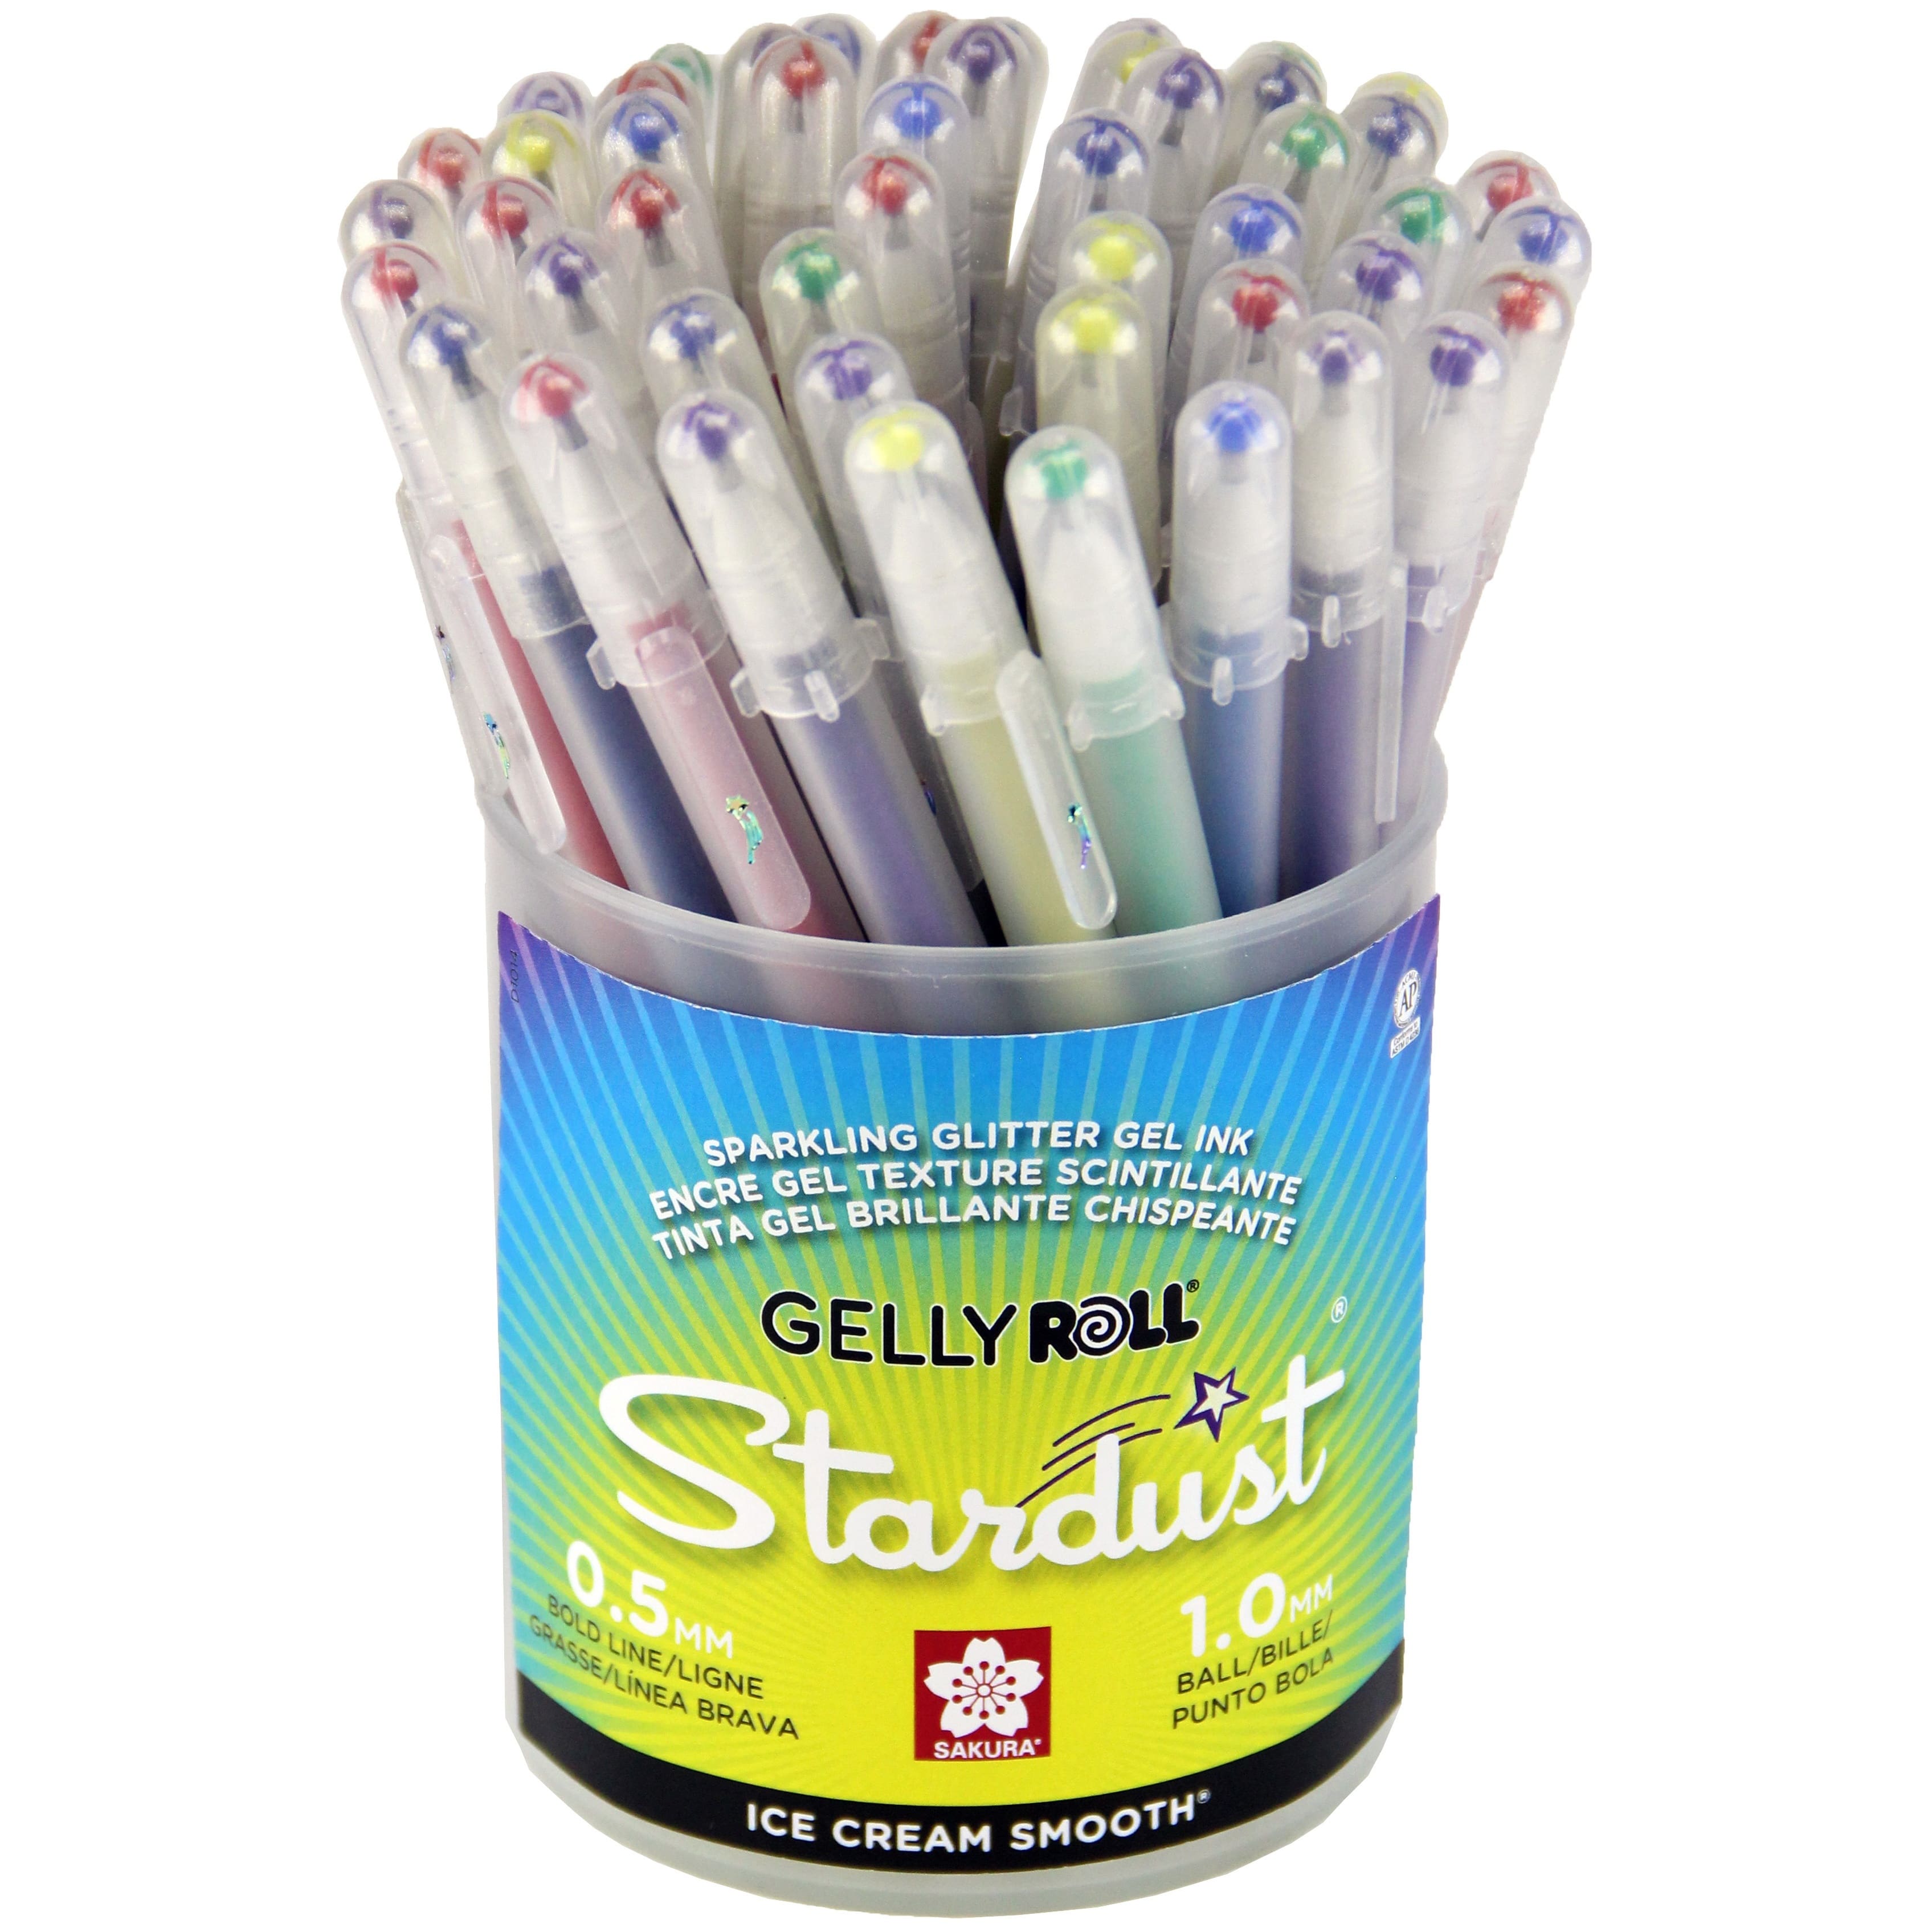 12 pcs SAKURA XPGB-12ST 1.0mm Jelly Roll Stardust TWINKLING Gel Ink Pens